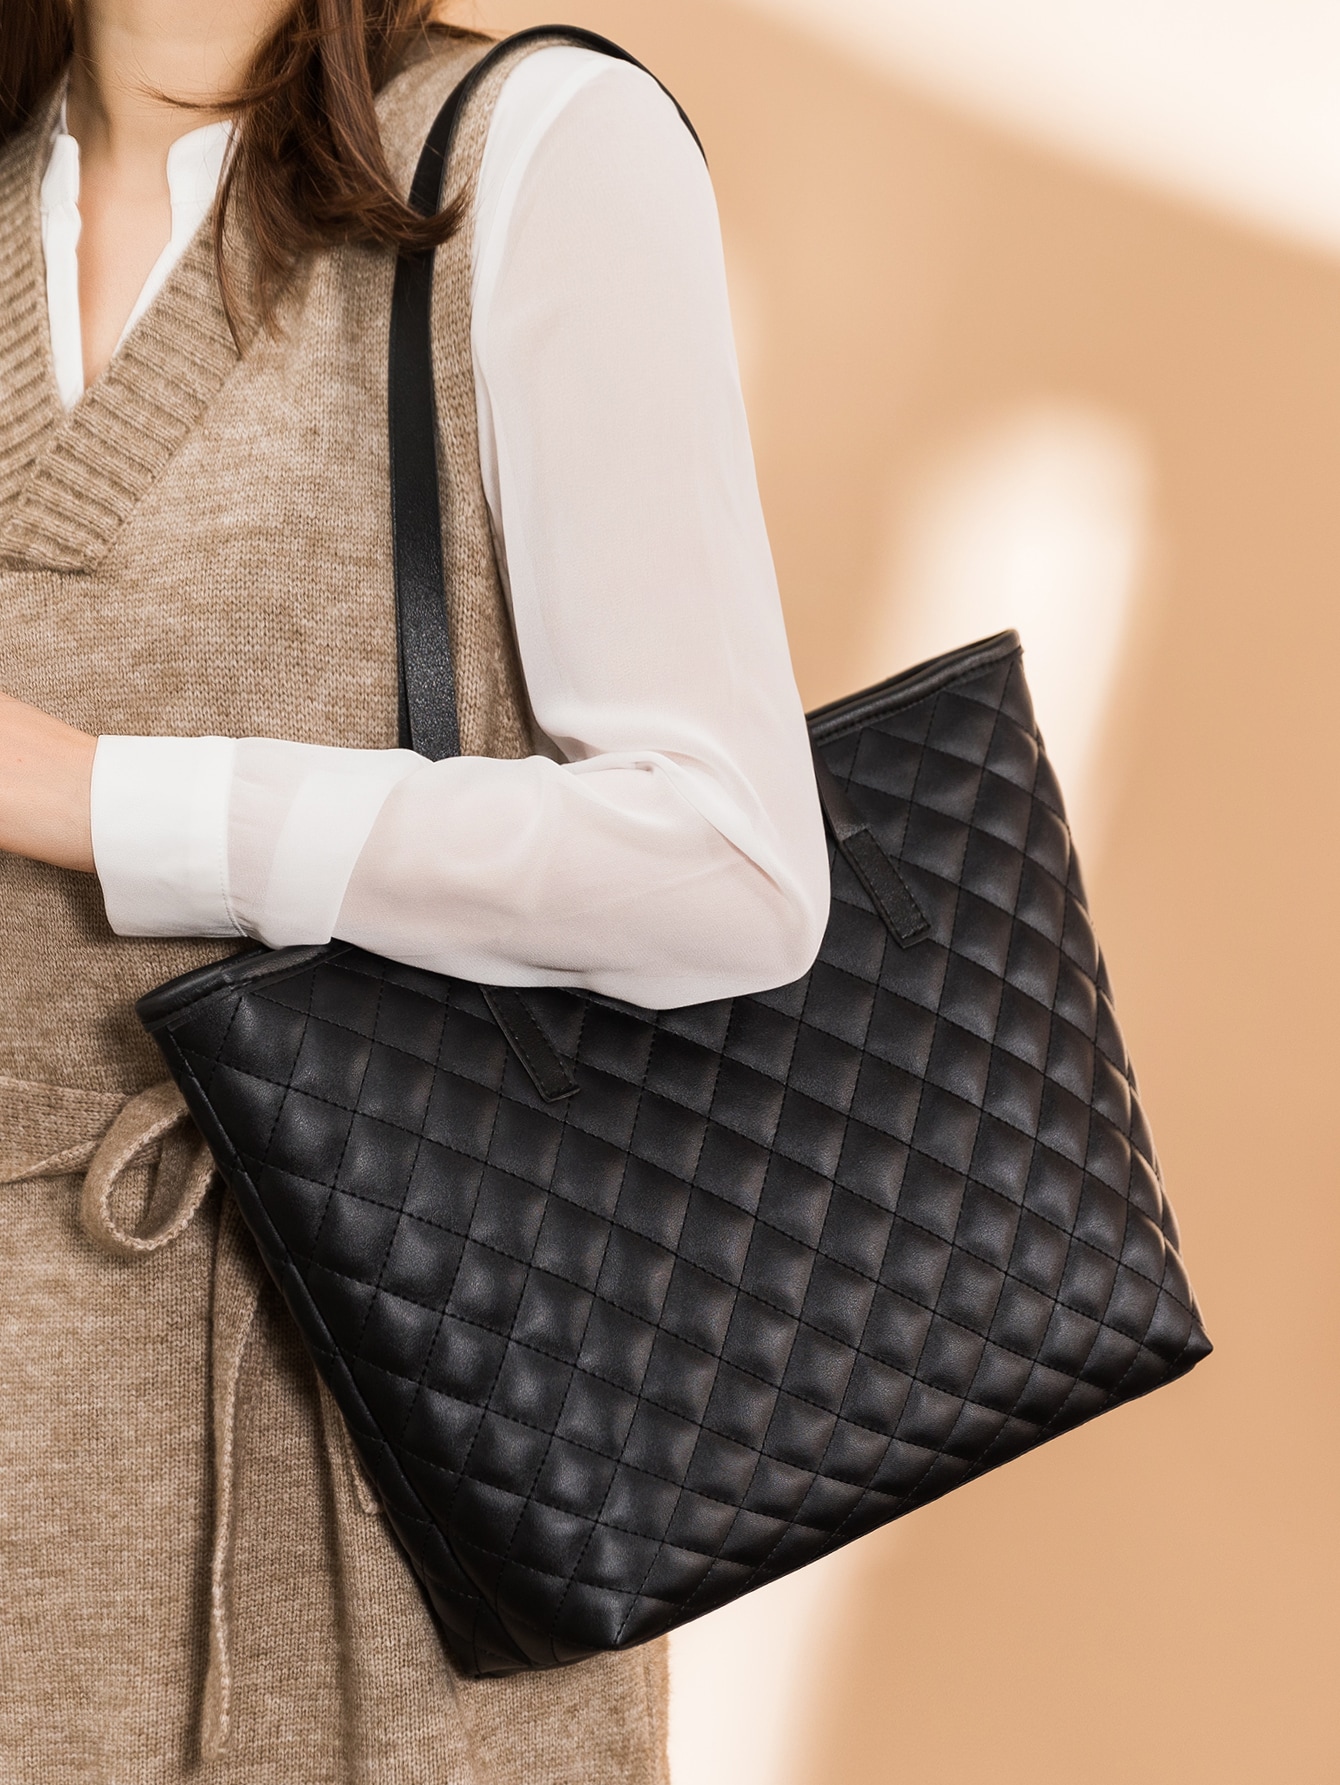 Женская черная большая сумка большой емкости для ежедневного использования мамы, черный модная женская сменная сумка на запястье простая корейская сумка кошелек сумка клатч на ремне кошелек на ремне бархатная сумка аксессуары